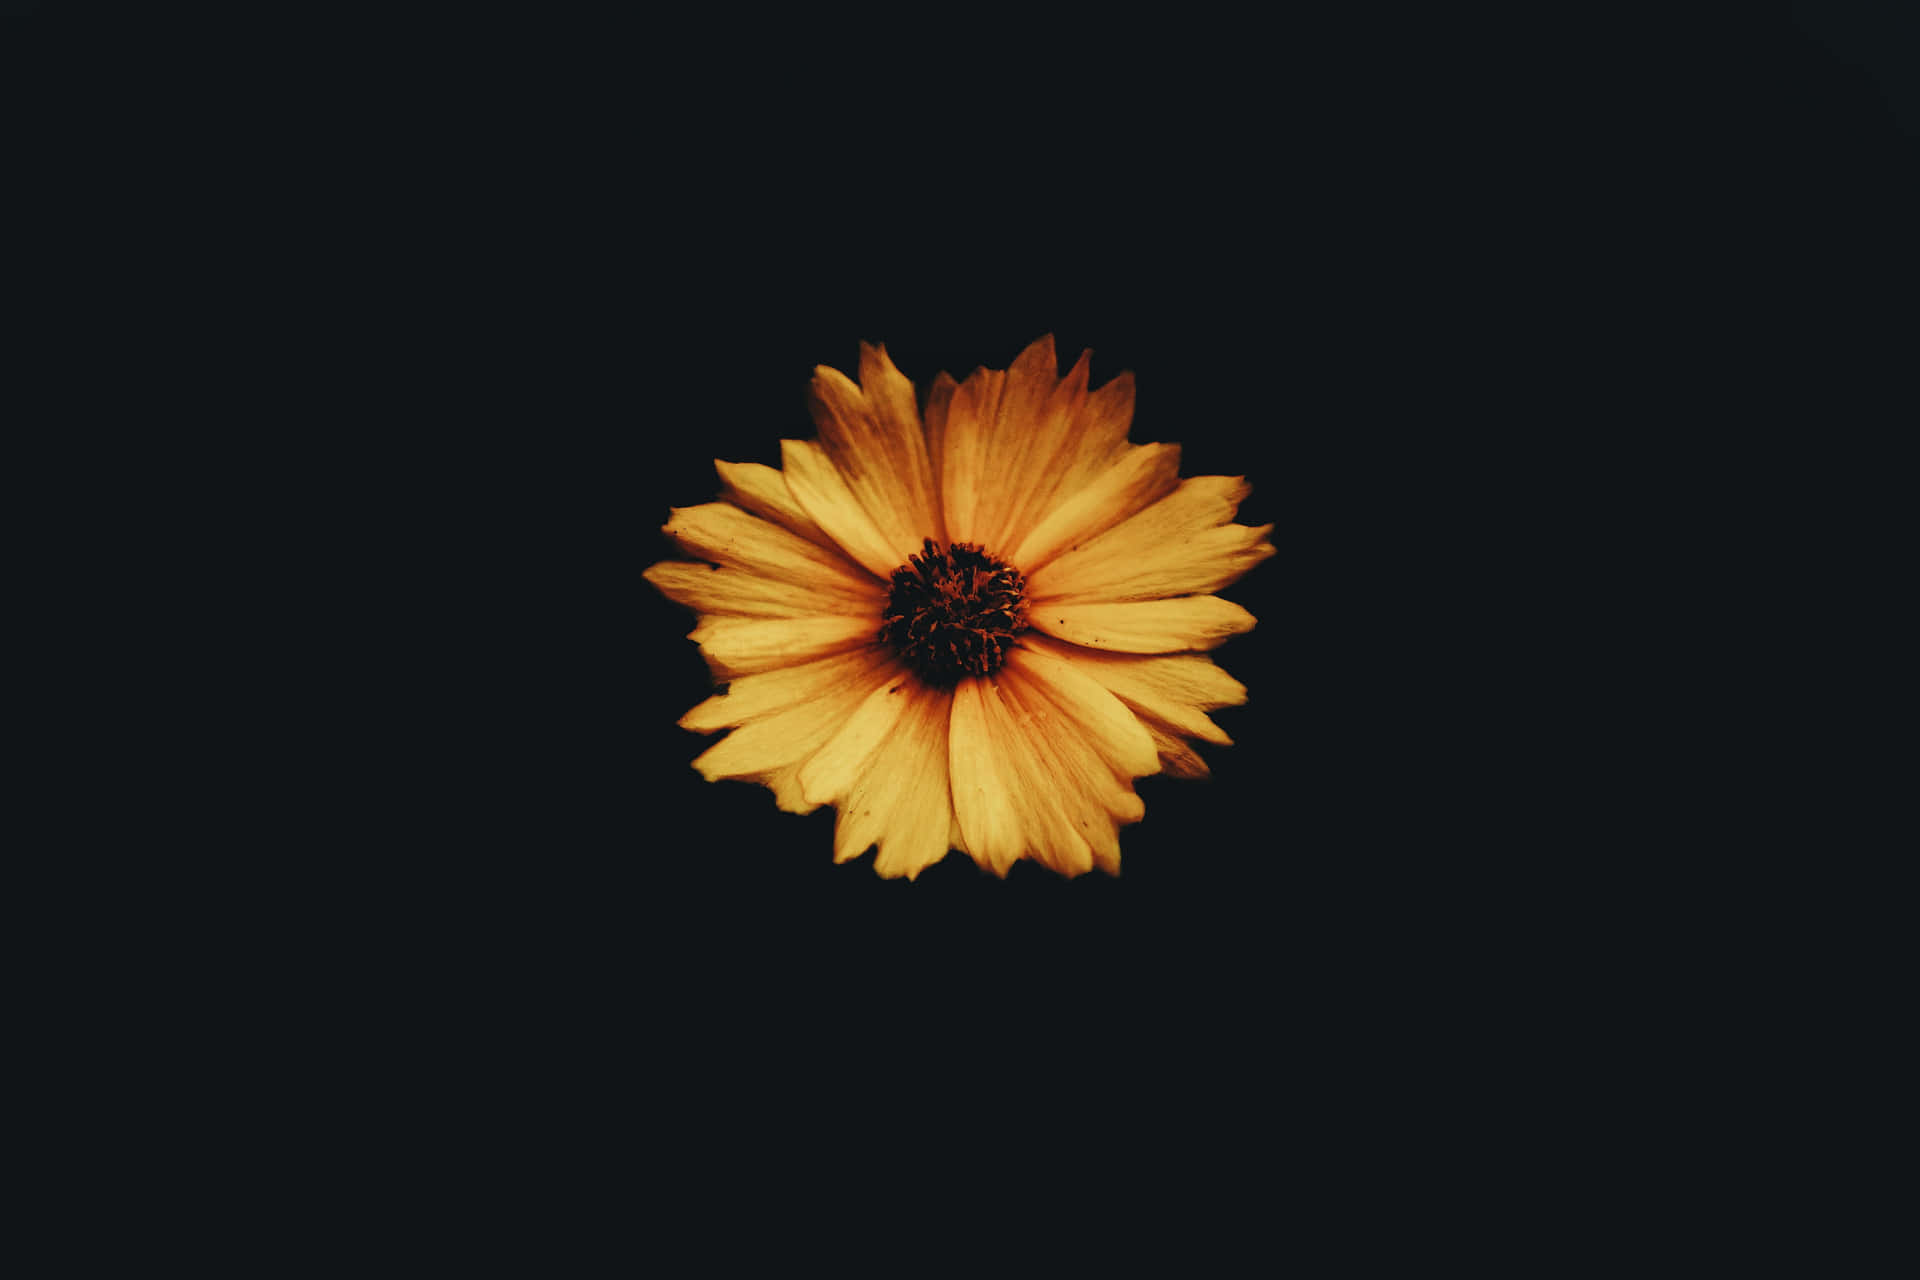 Eineatemberaubende Dunkle Sonnenblume In All Ihrer Pracht. Wallpaper